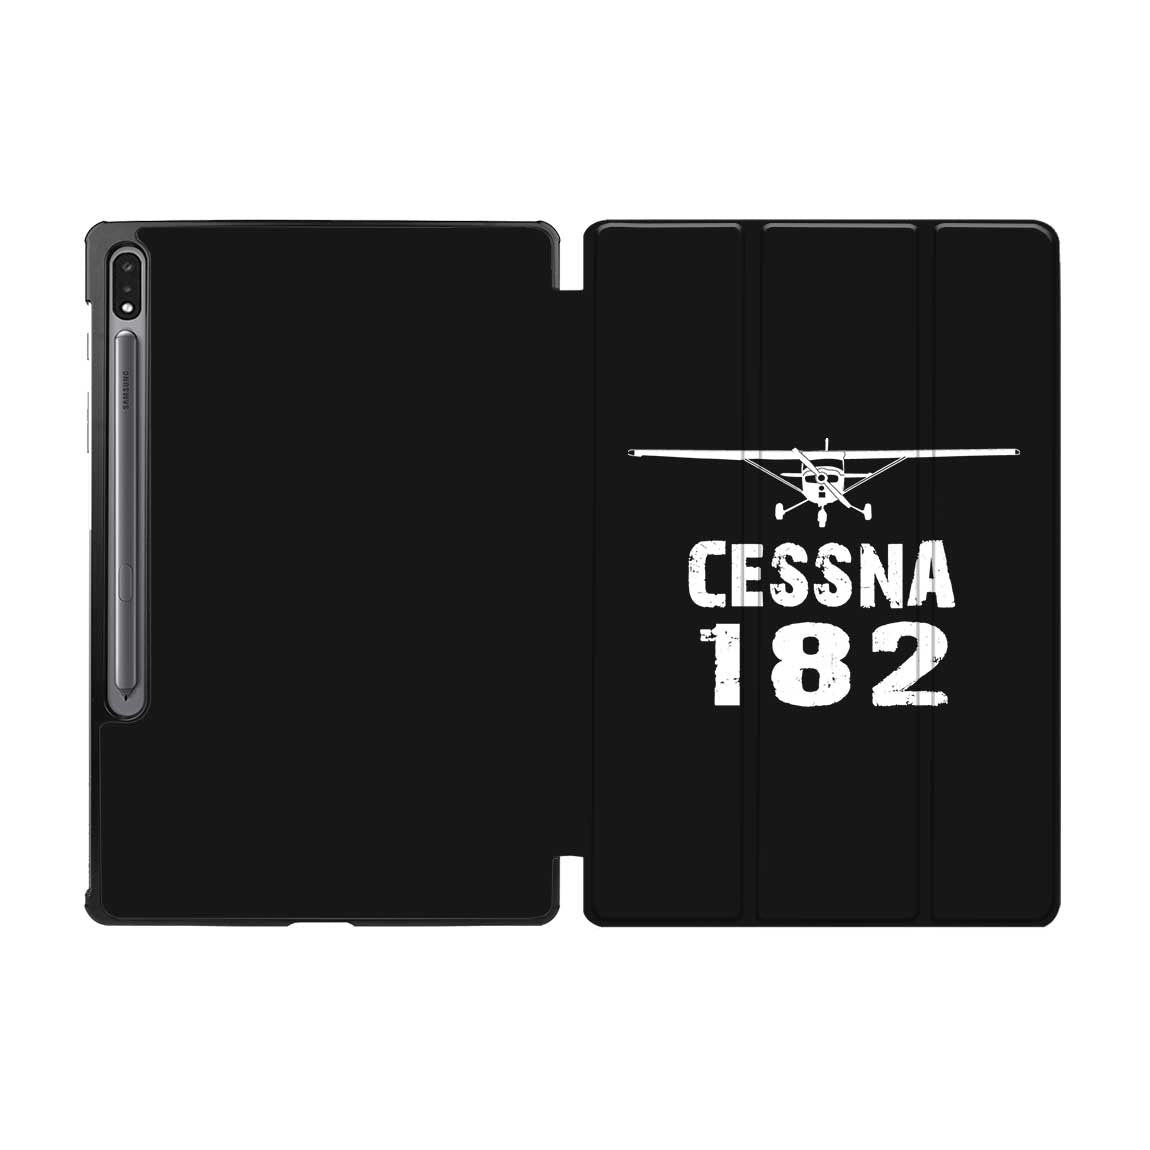 Cessna 182 & Plane Designed Samsung Tablet Cases